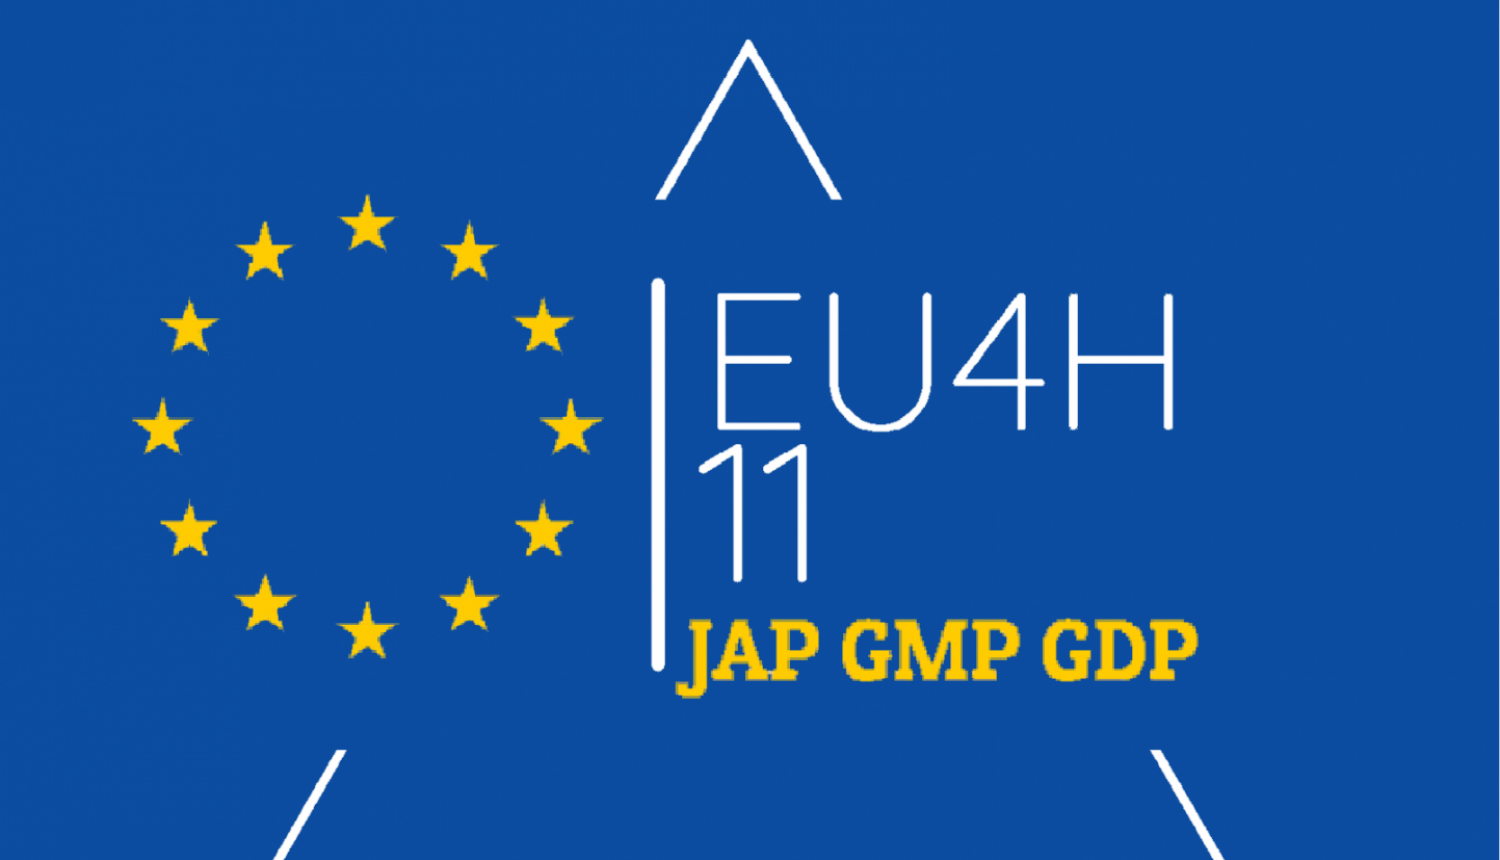 EU4H11 logo